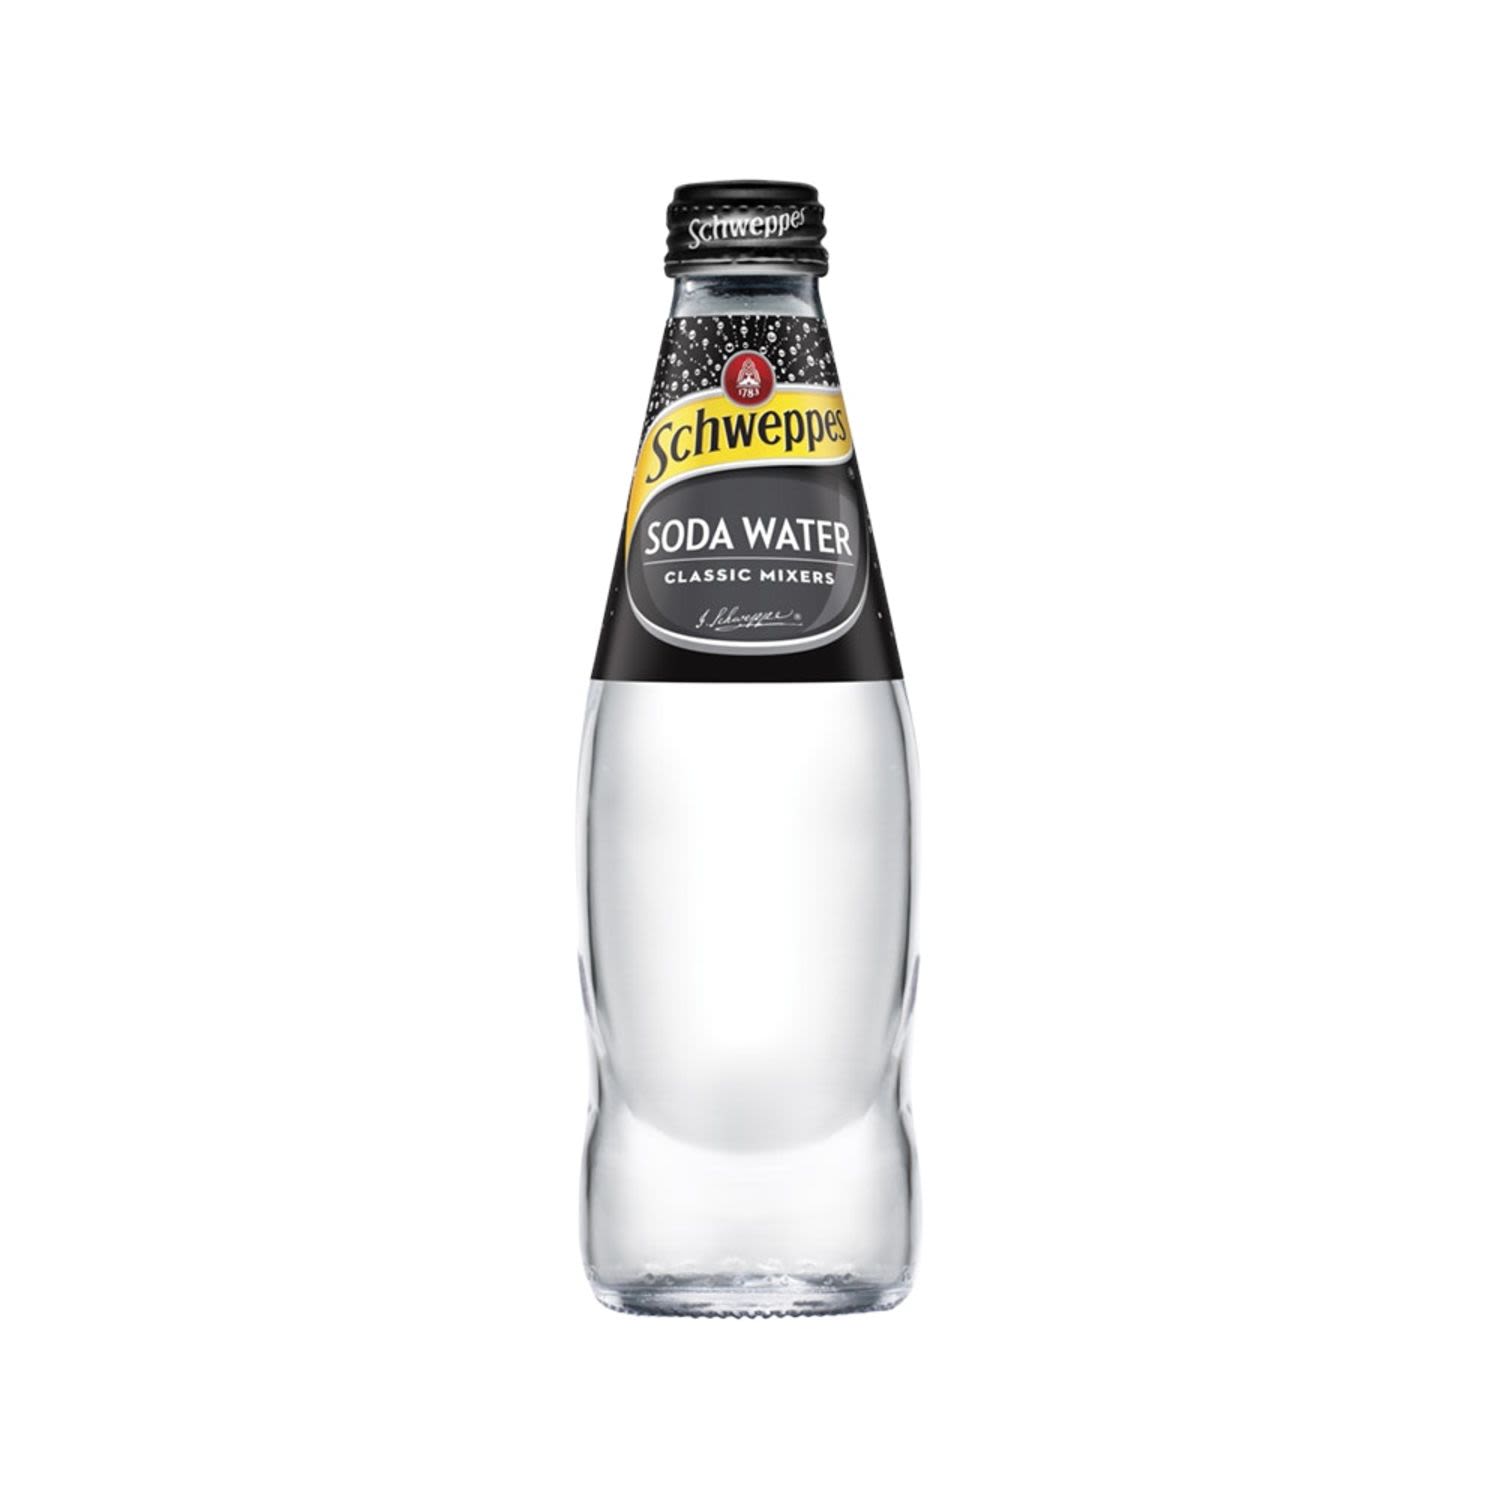 Schweppes Soda Water 300mL Bottle